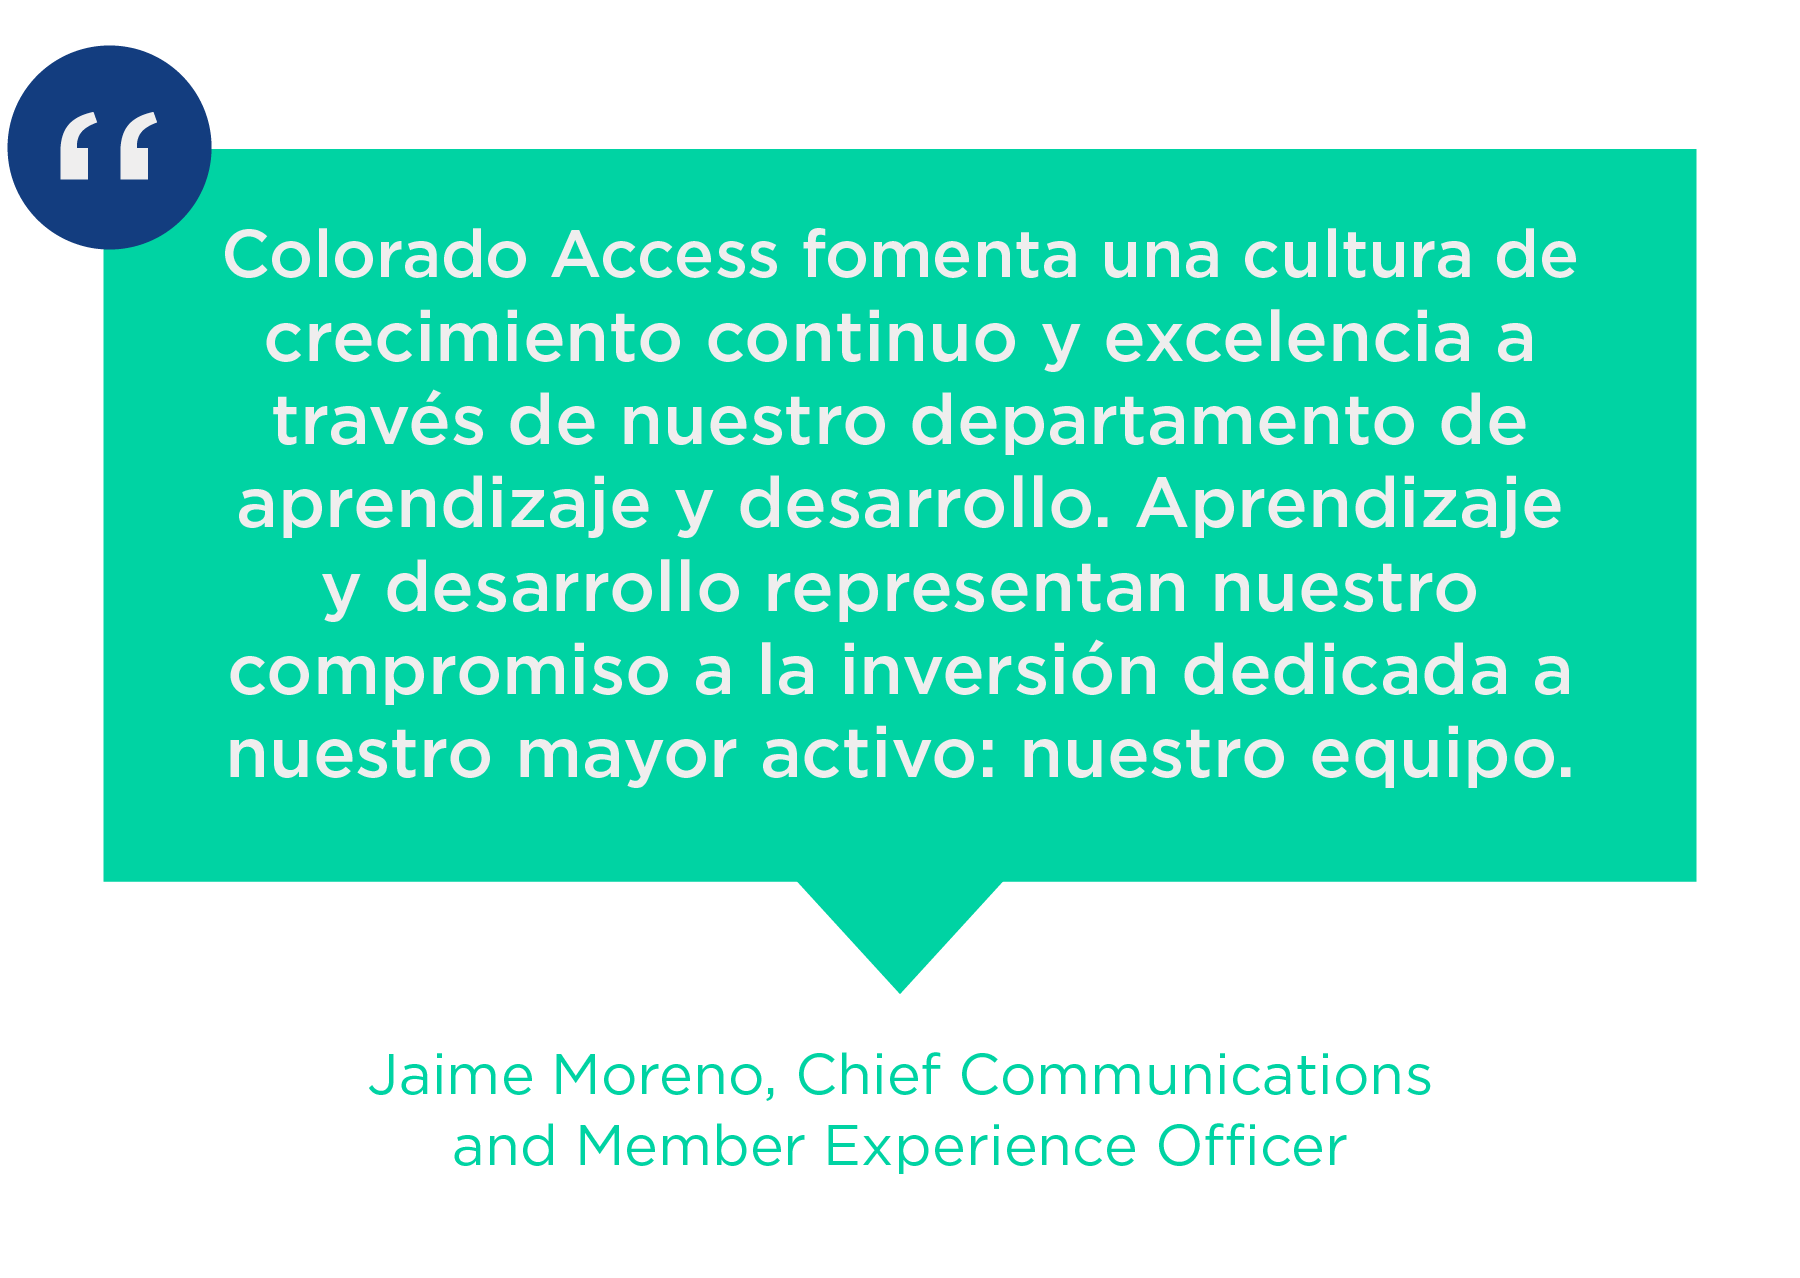 Colorado Access fomenta una una cultura de crecimiento continuo y excelencia a través de nuestro departamento de aprendizaje y desarrollo. Aprendizaje y desarrollo representan nuestro compromiso a la inversión dedicada a nuestro mayor activo: nuestro equipo